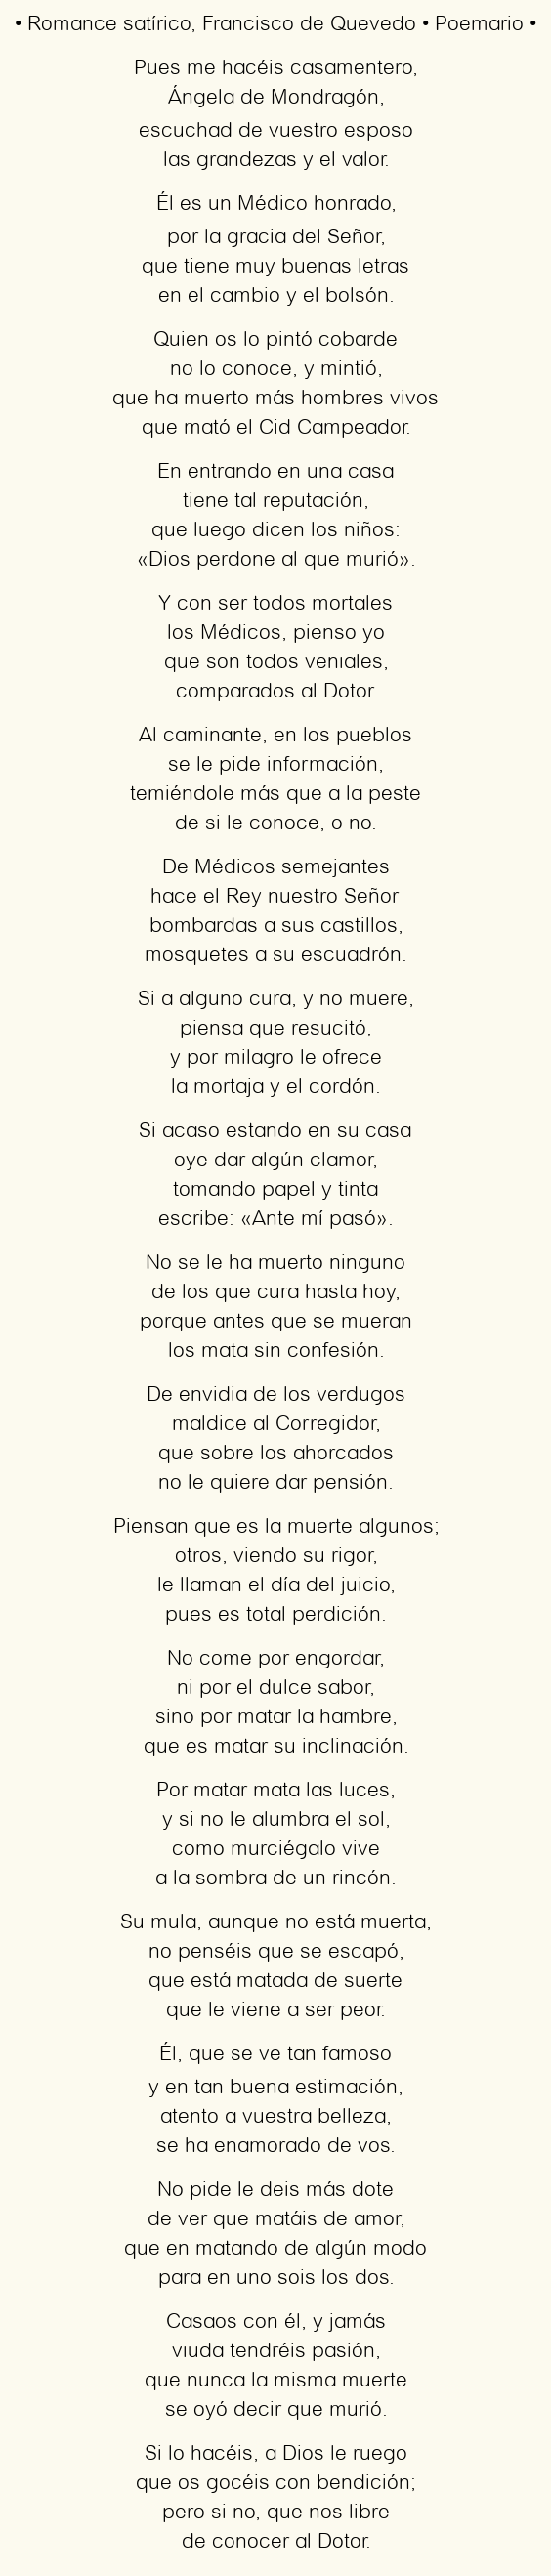 Imagen con el poema Romance satírico, por Francisco de Quevedo